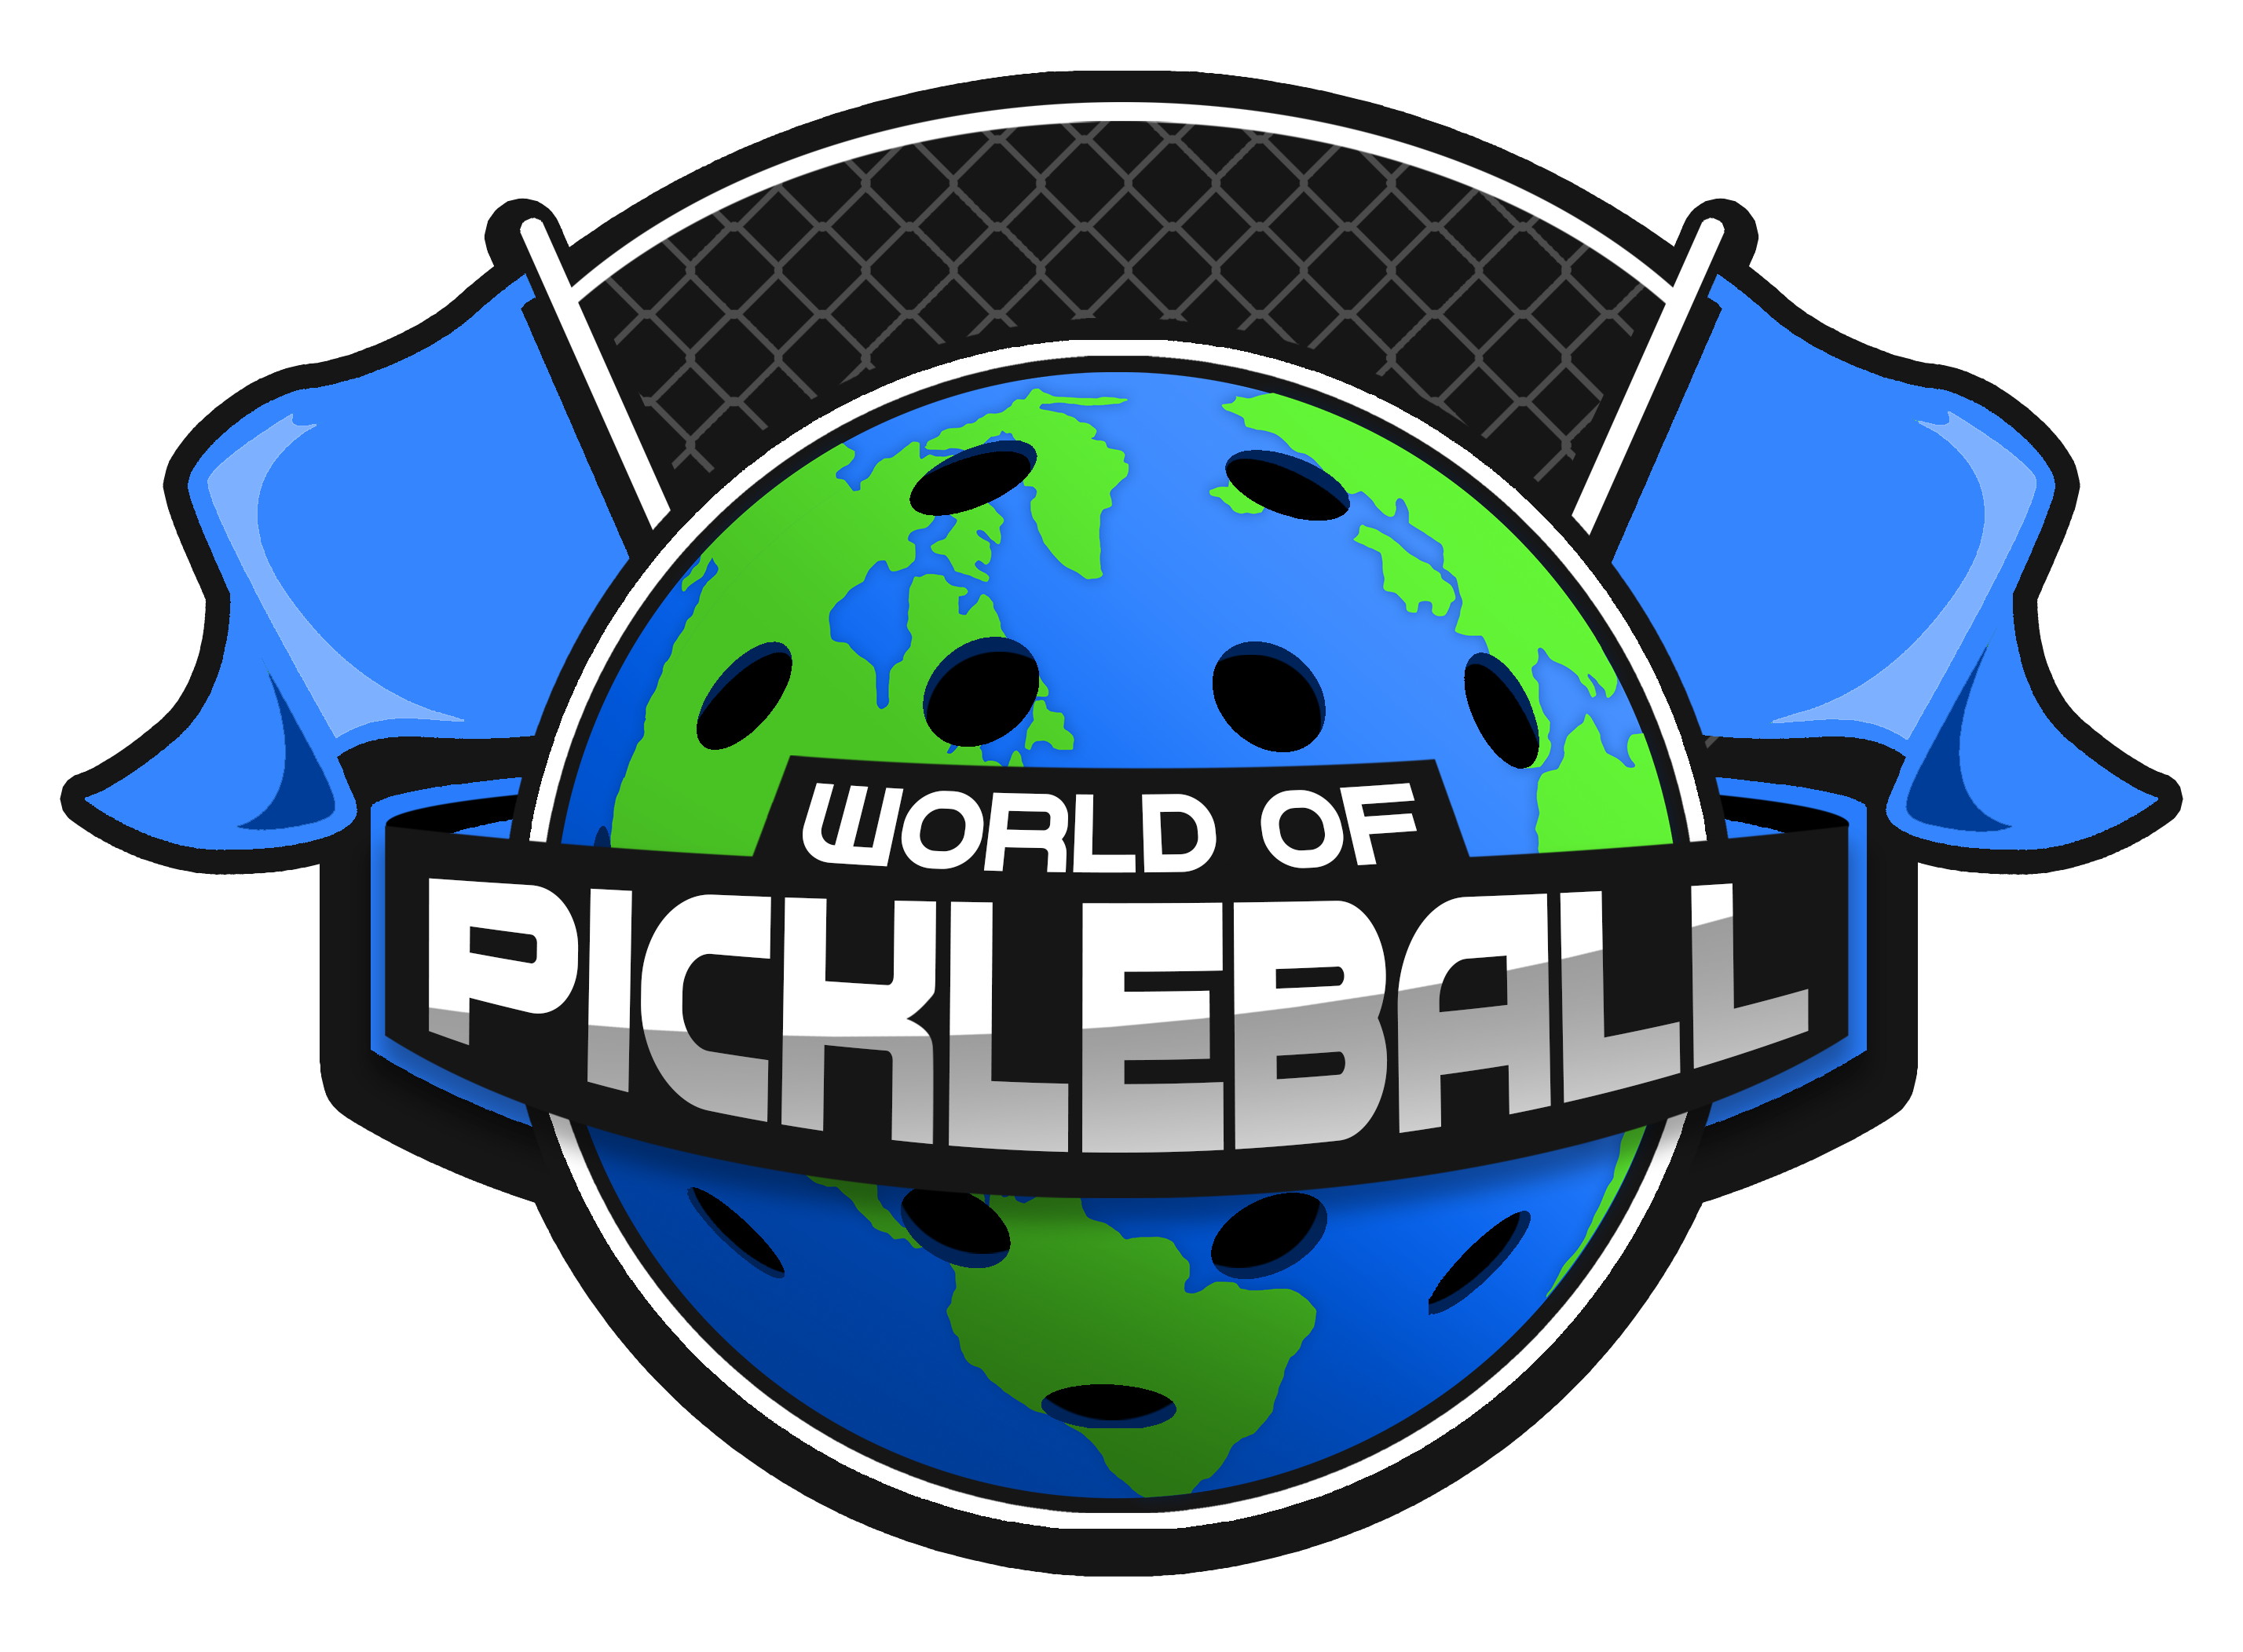 World of Pickleball